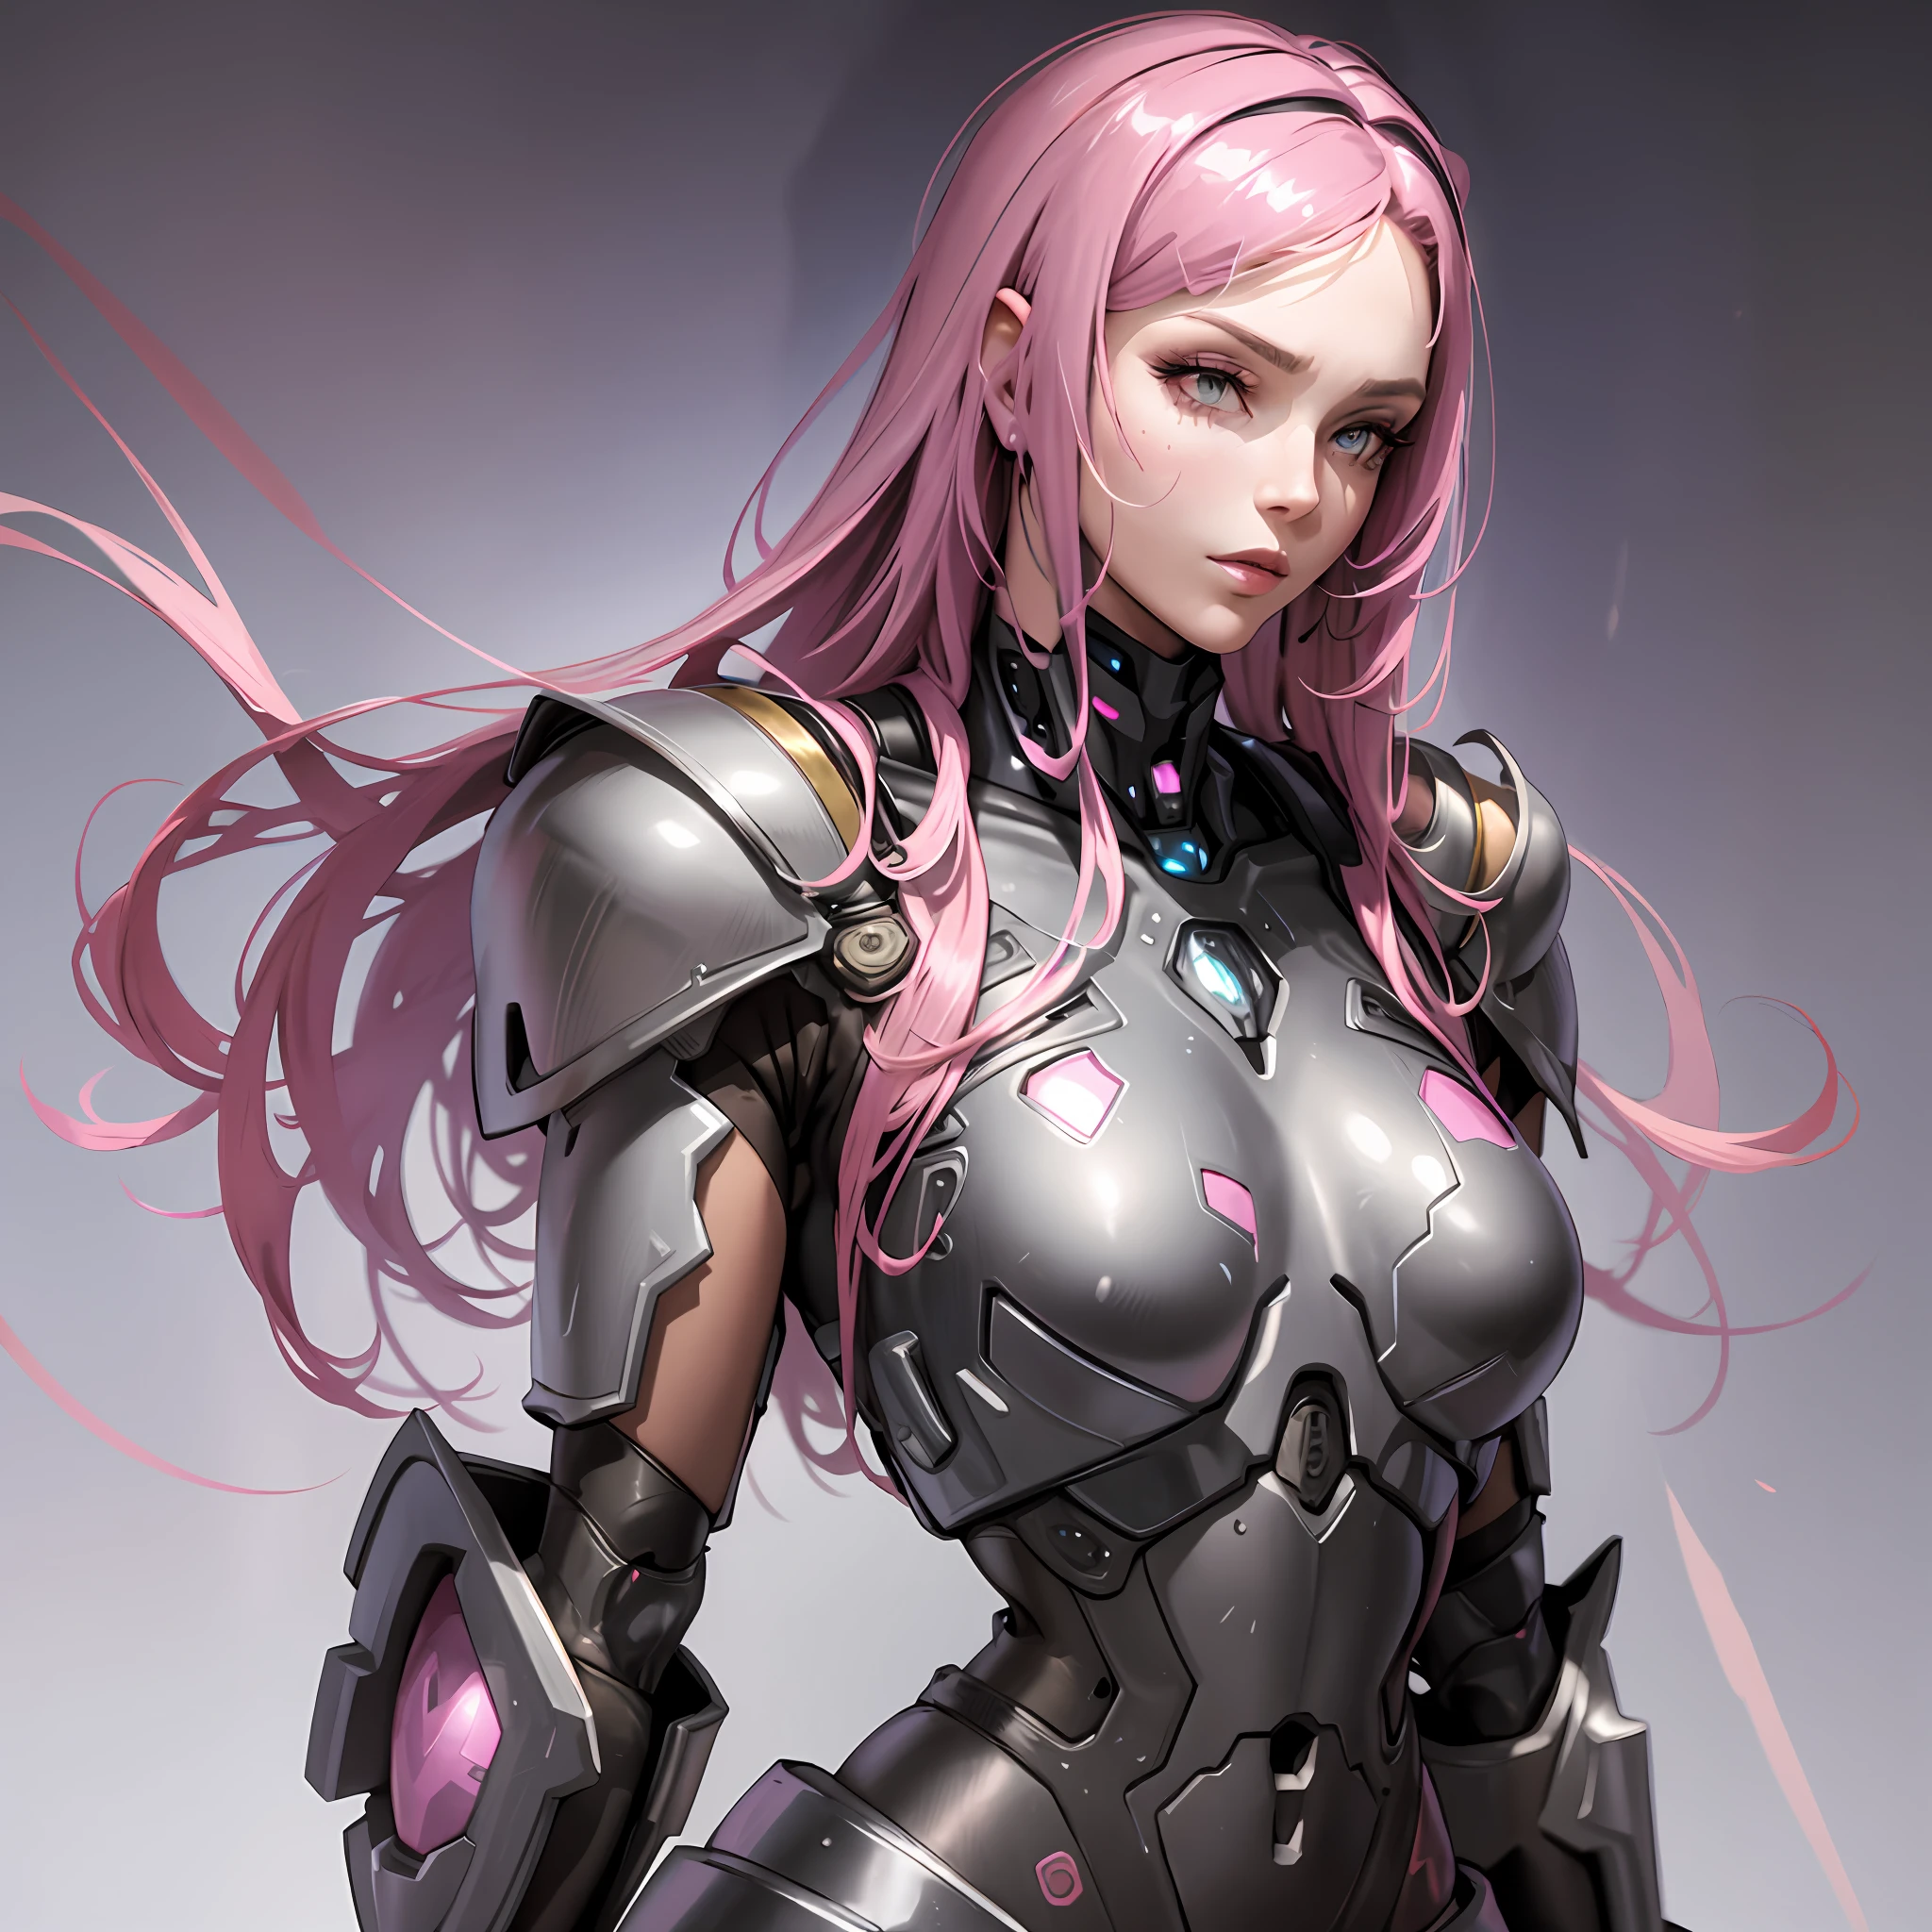 美麗的高個子女人，穿著機器人裝甲，有著超現實和細緻的粉紅色頭髮